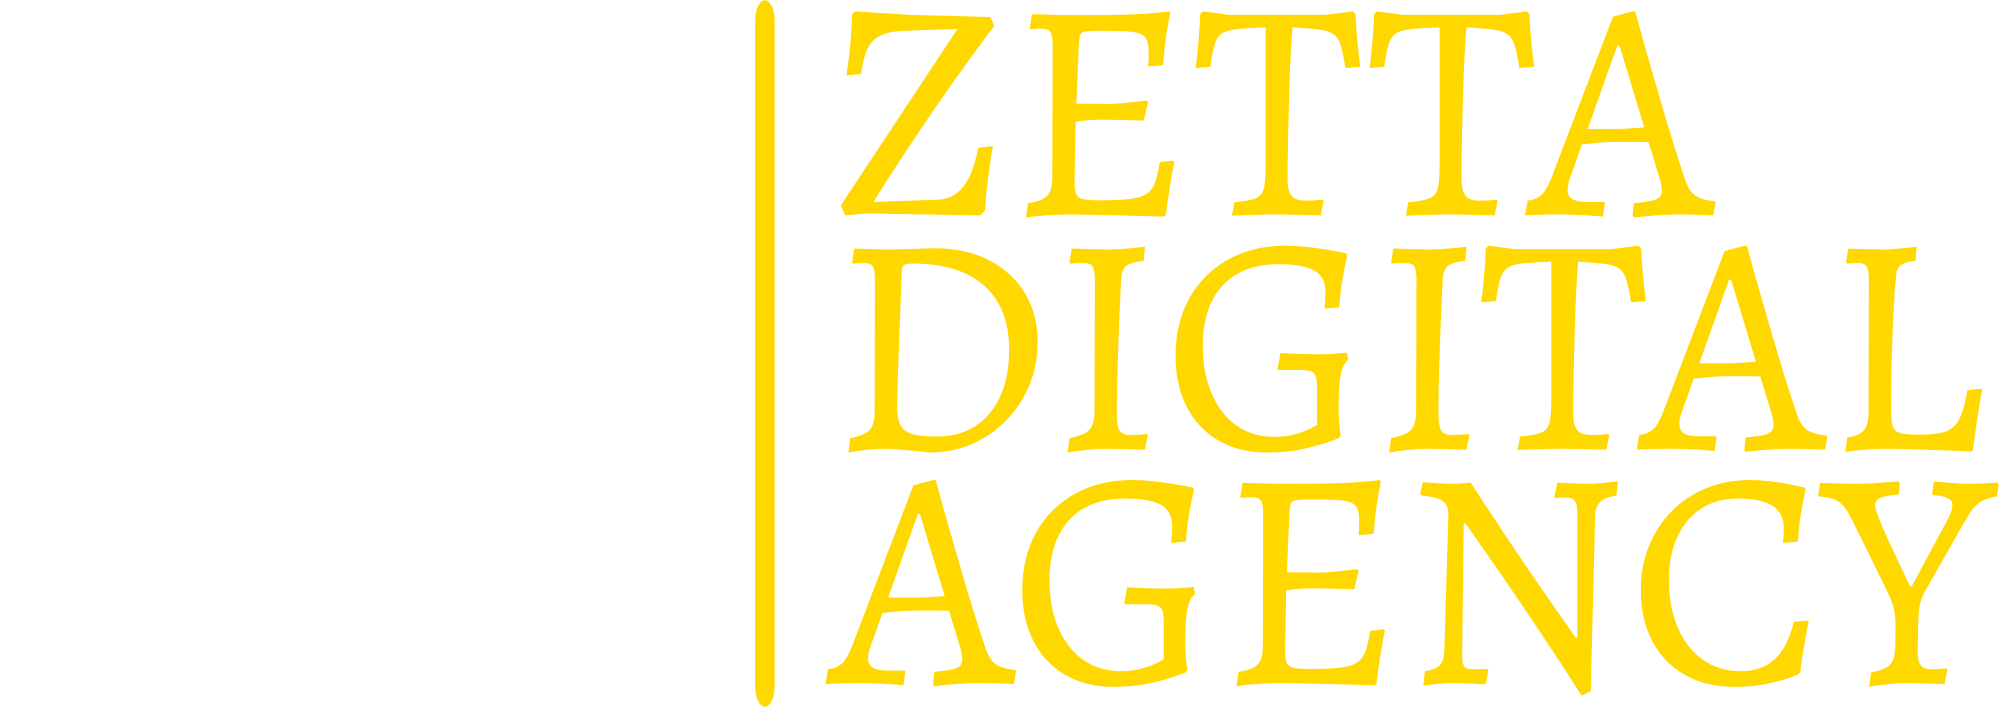 ZETTA Digital Agency